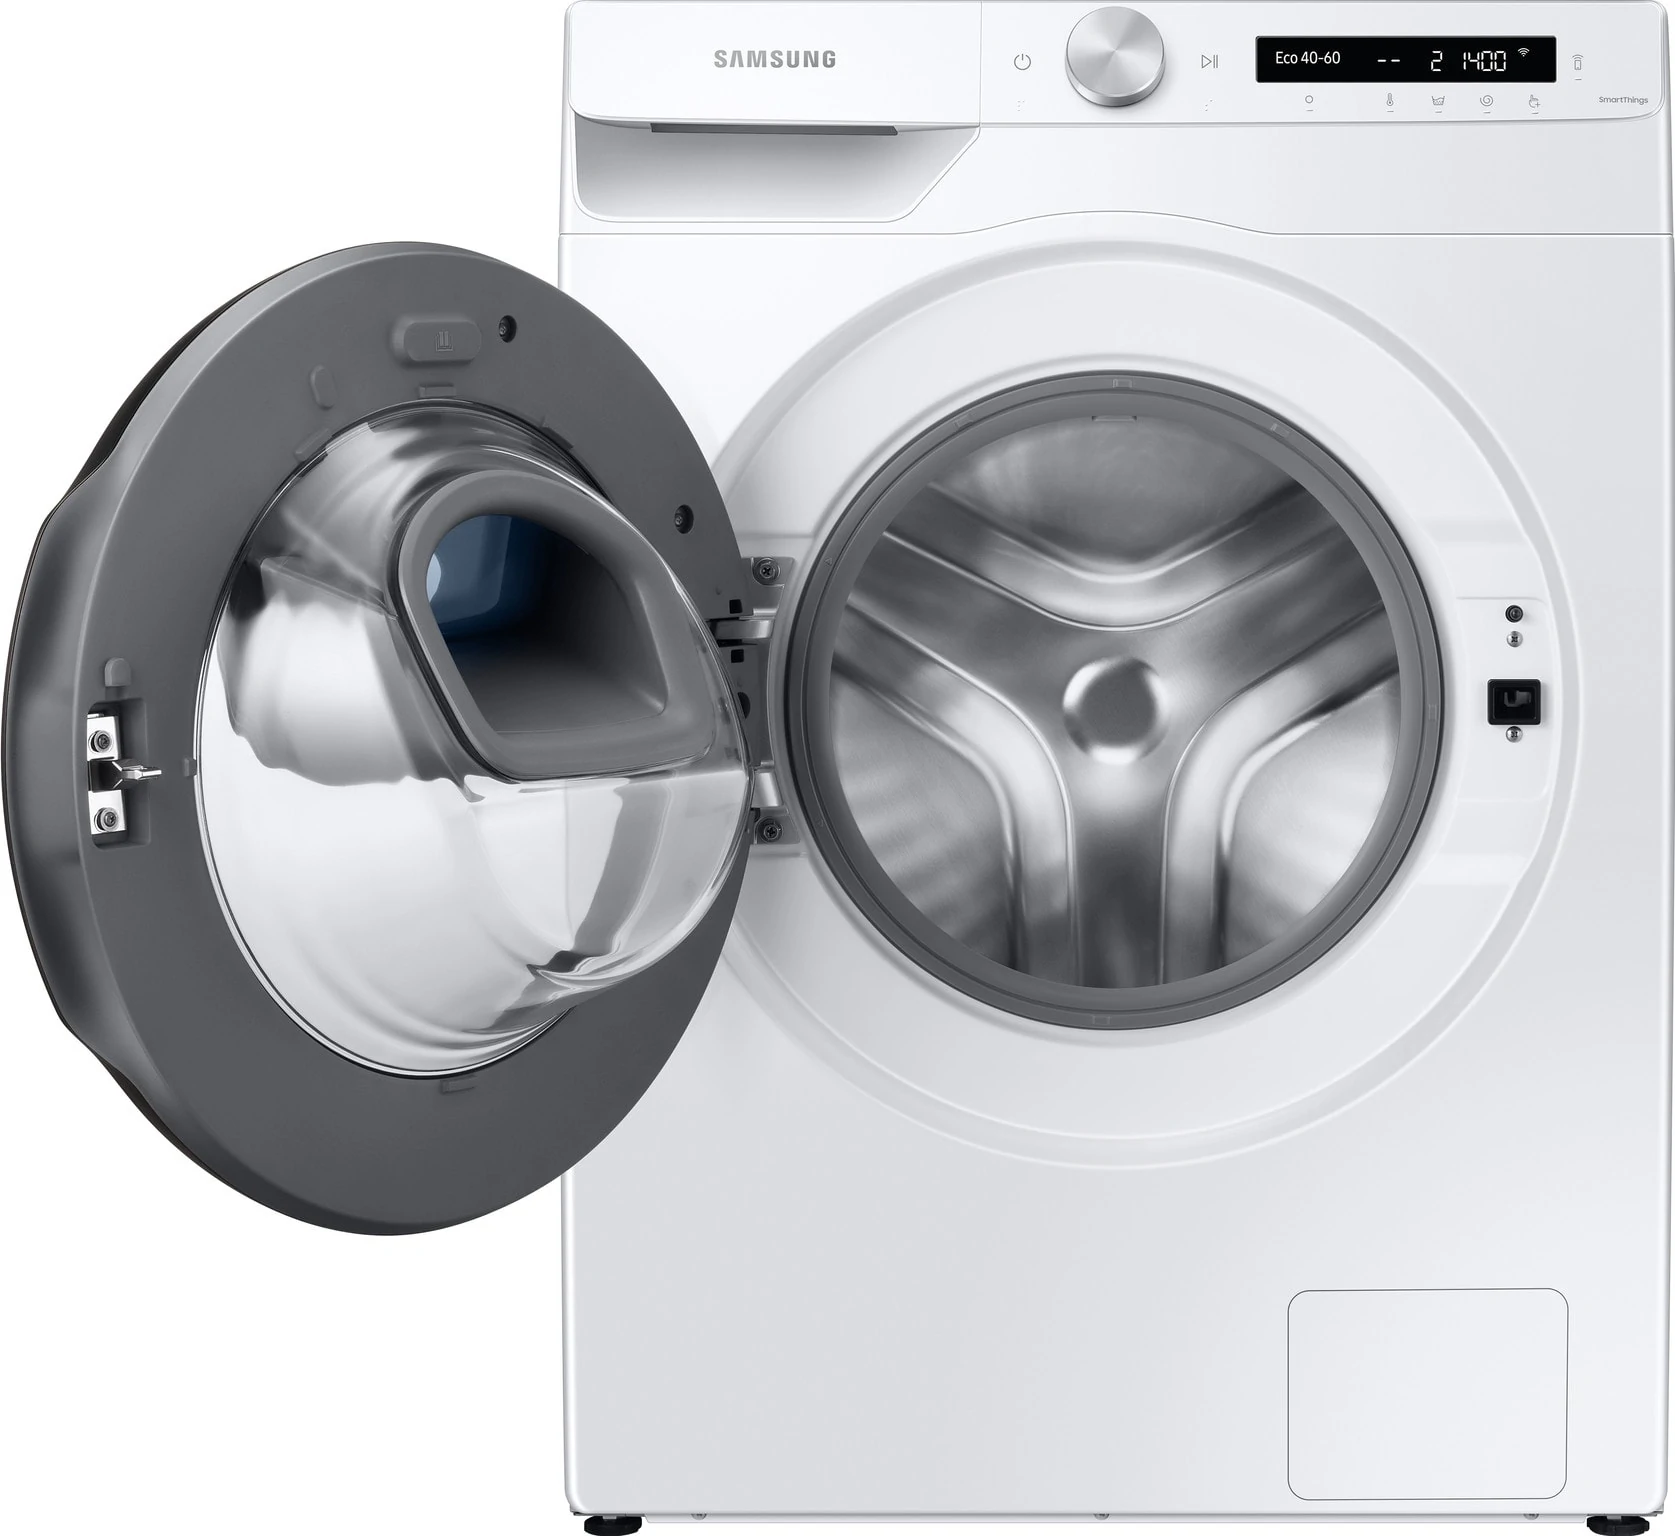 Samsung Addwash wasmachine met open deur, vooraanzicht